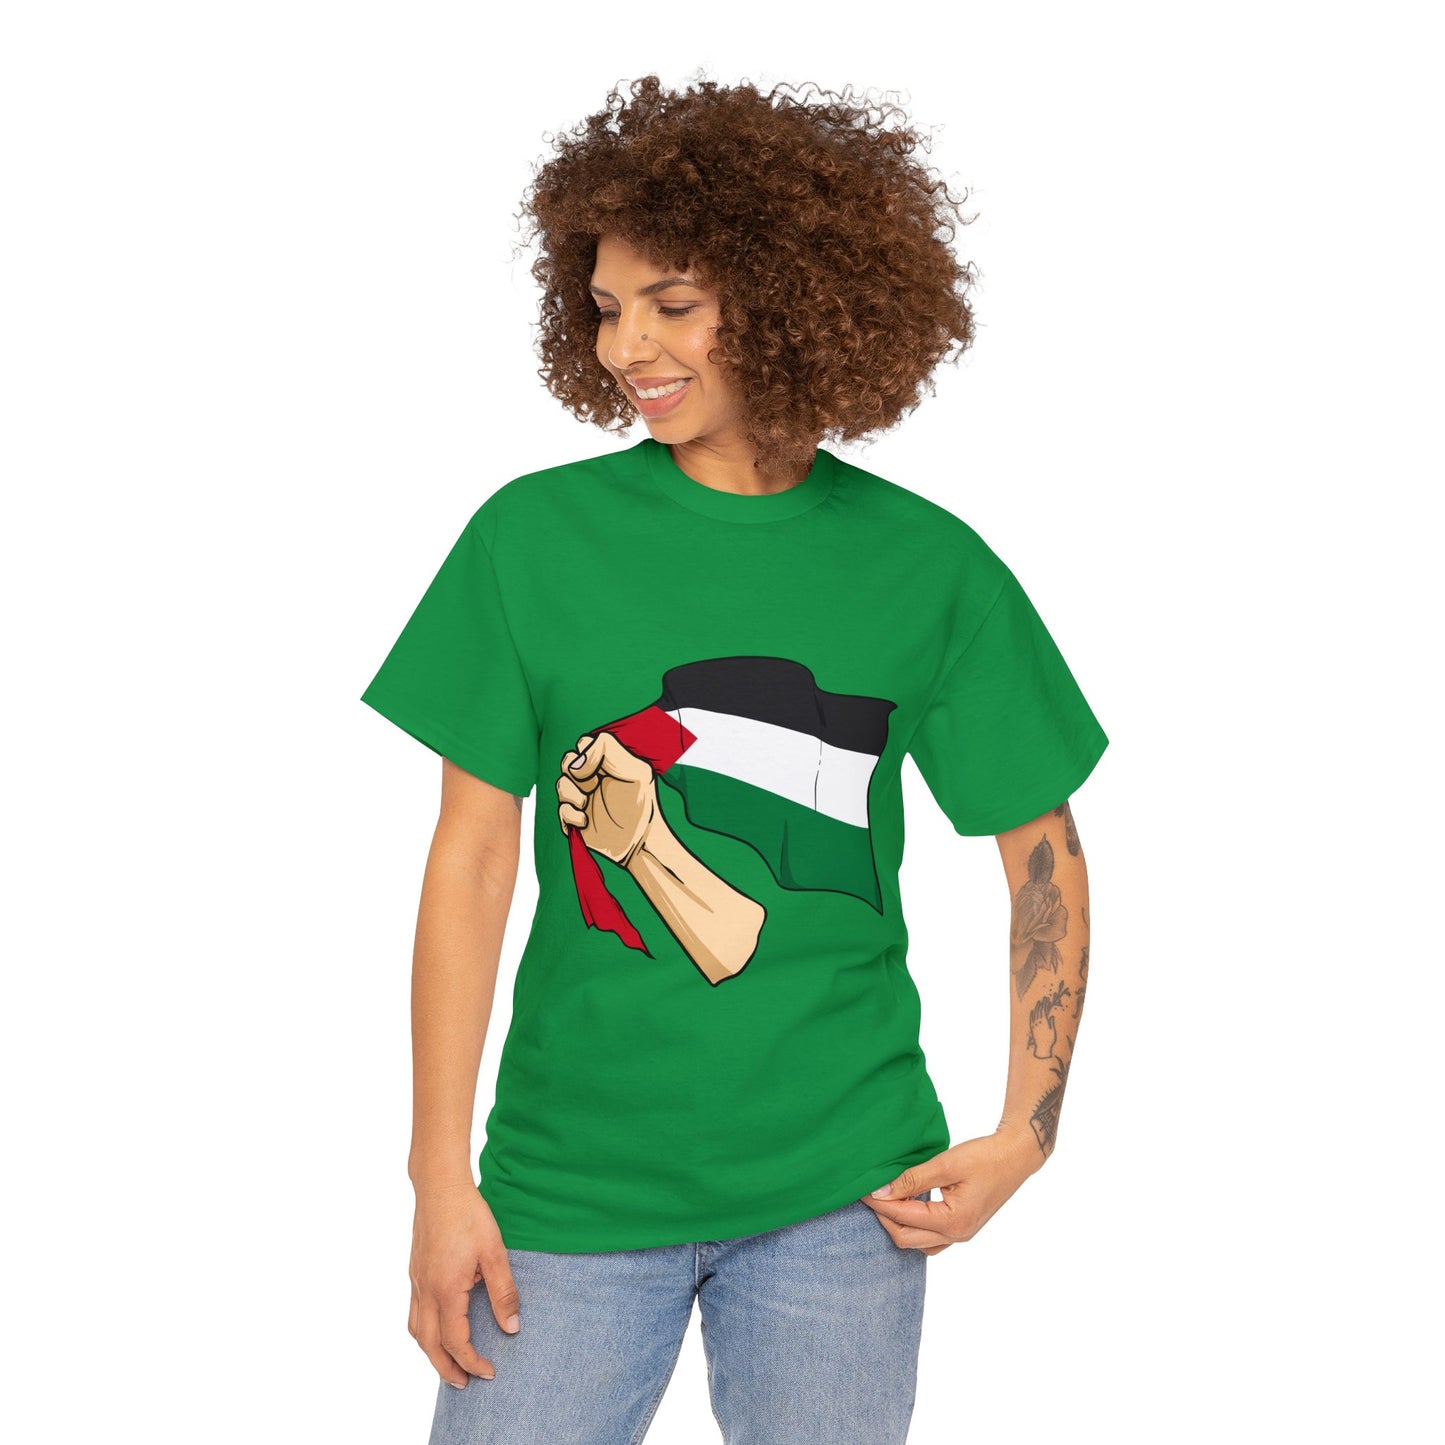 #FreePalestine T-Shirt aus schwerer Baumwolle